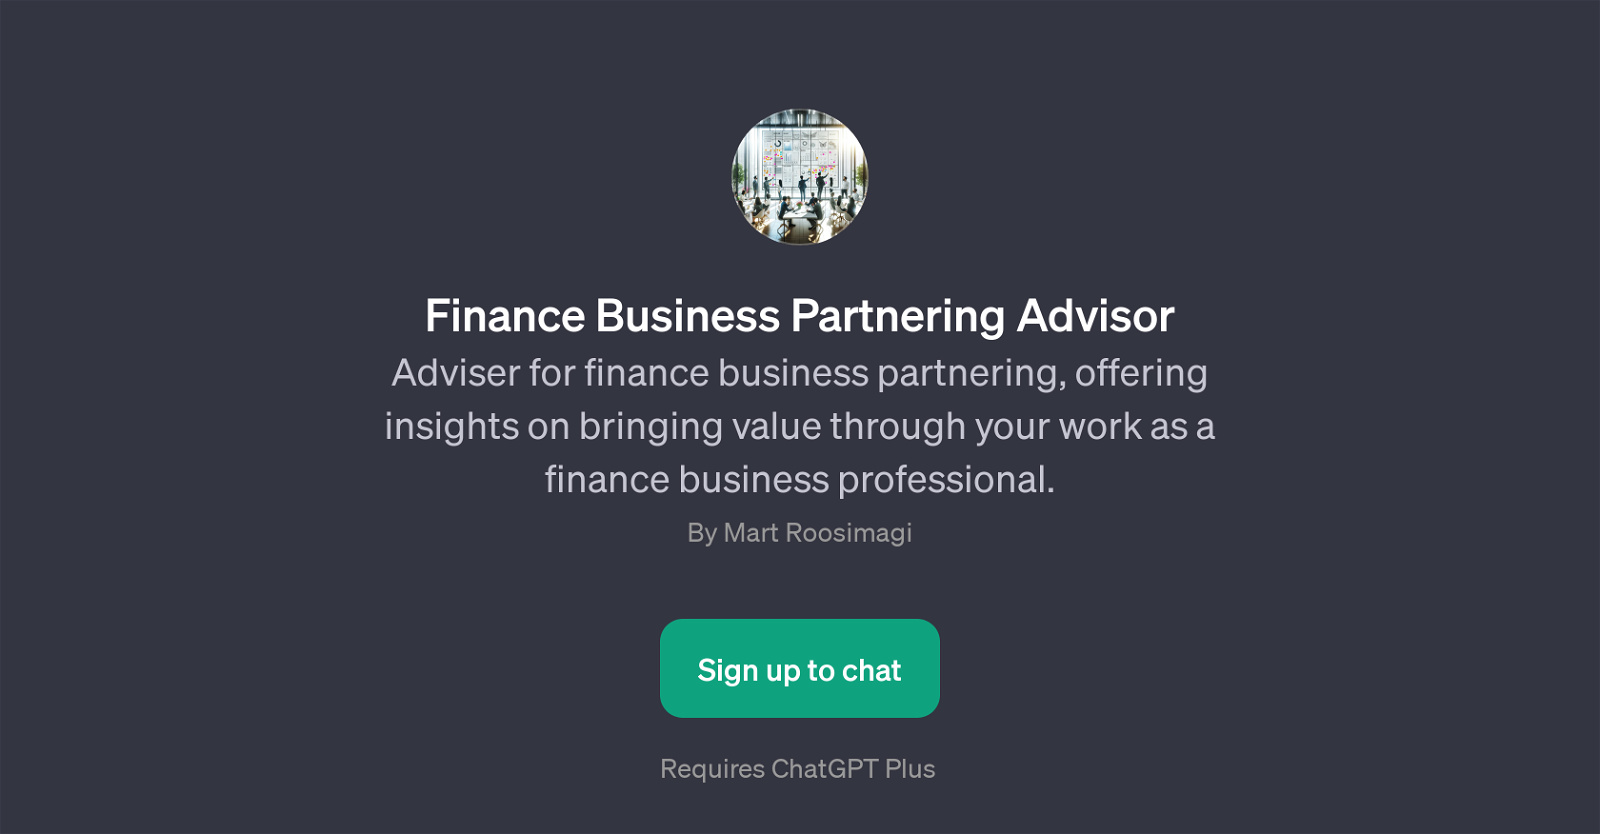 Finance Business Partnering Advisor website